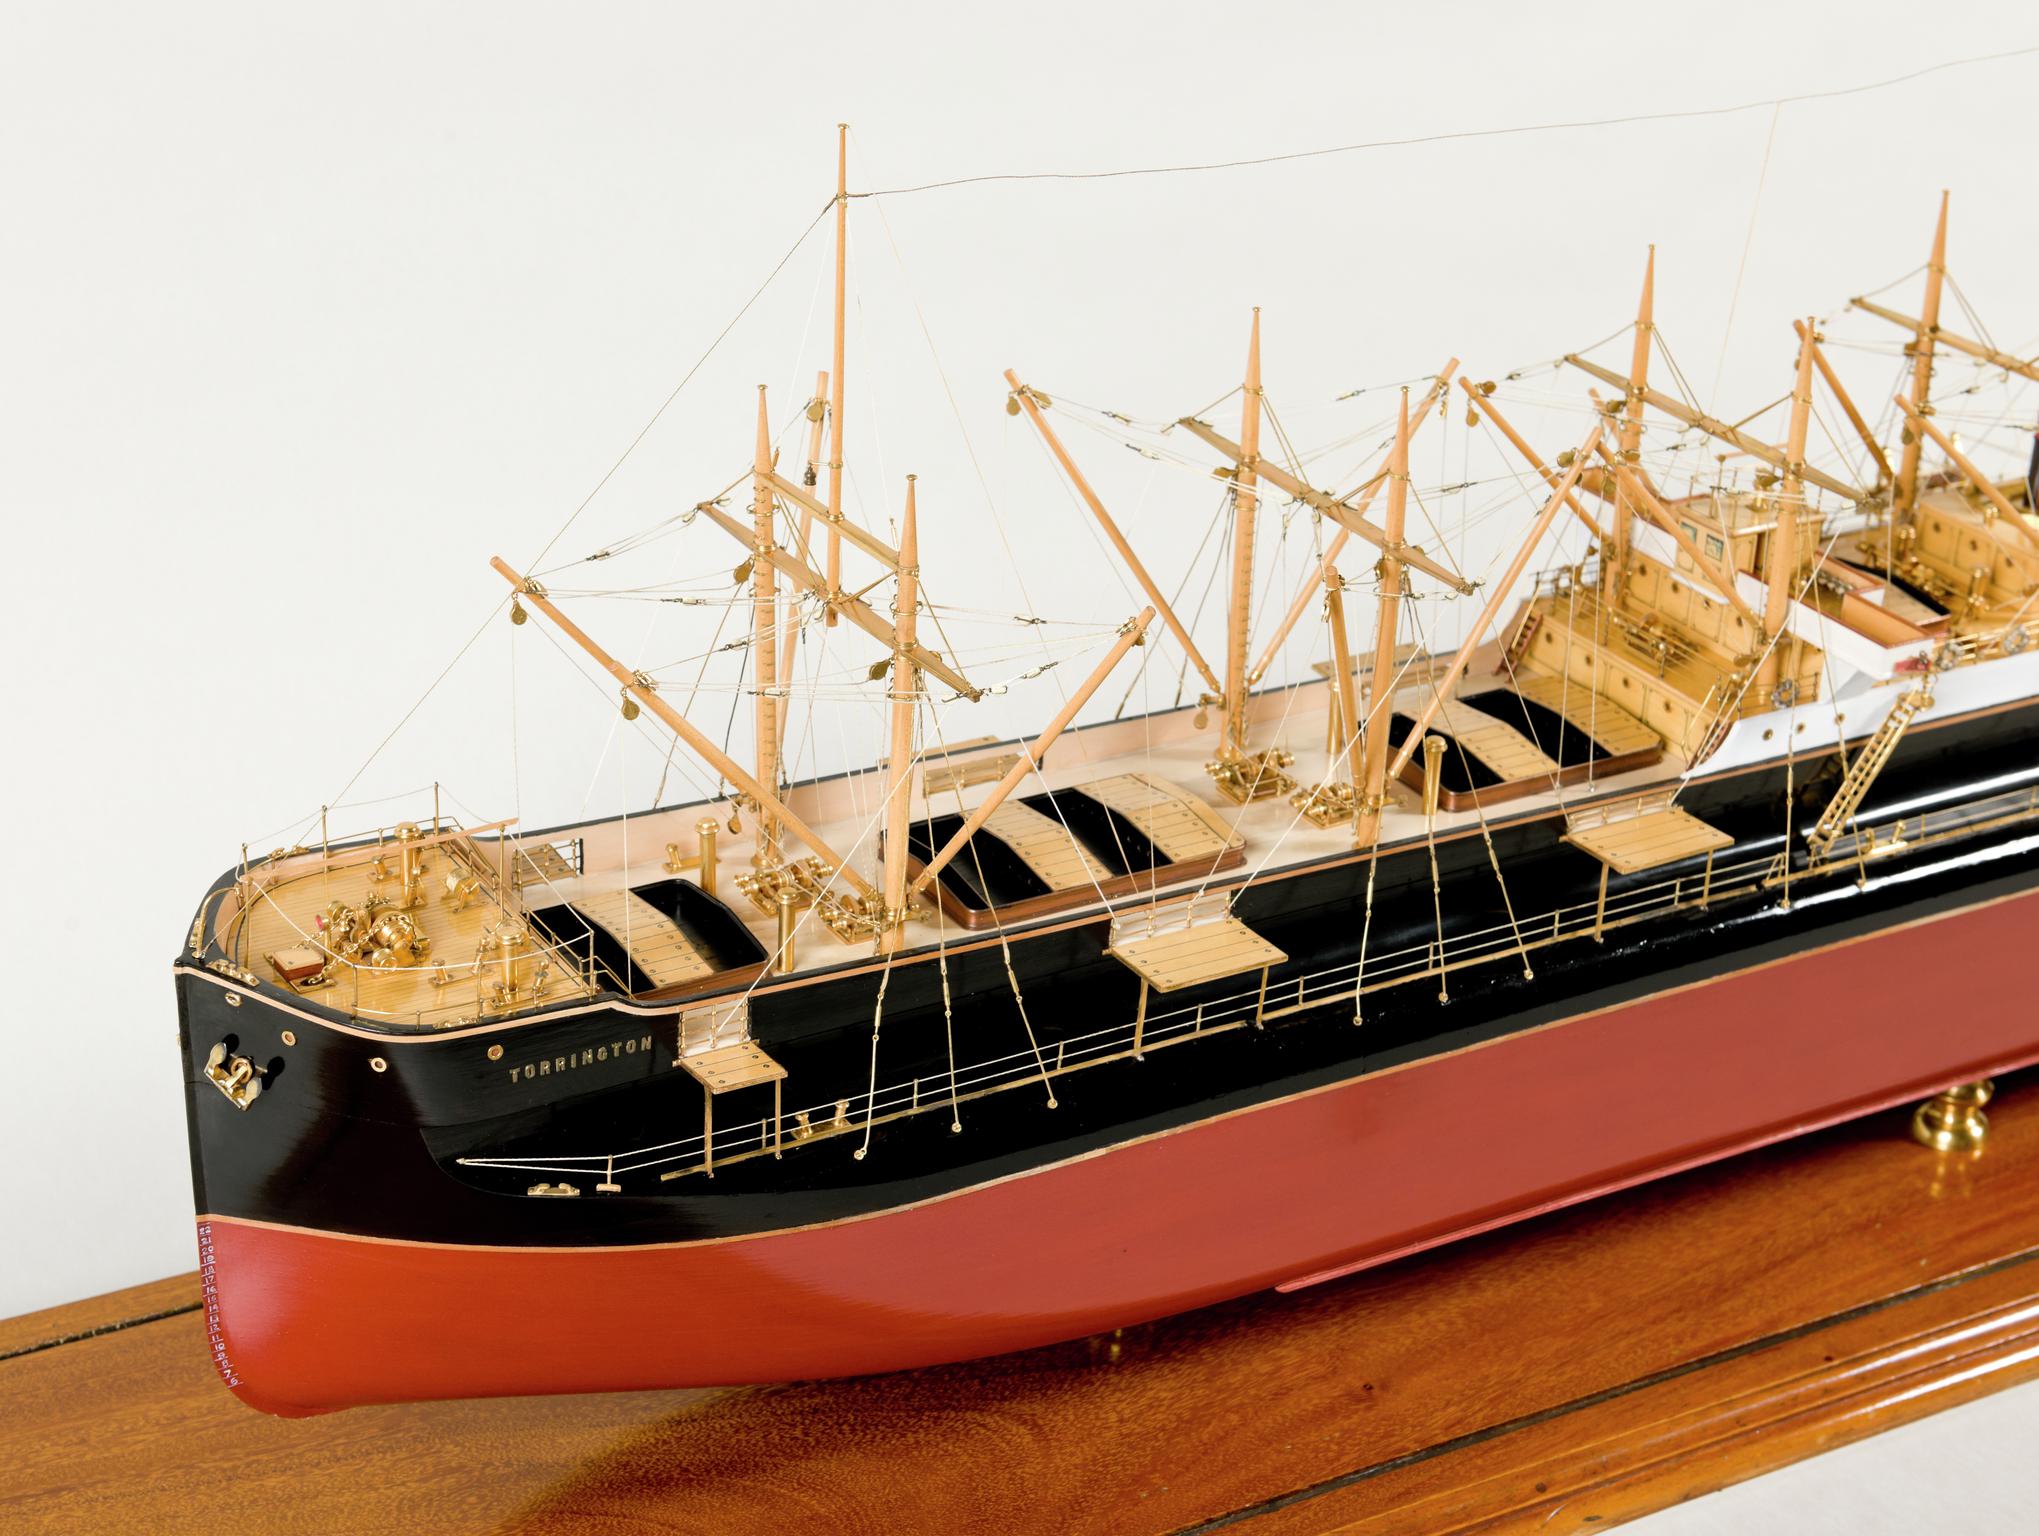 S.S. TORRINGTON, full hull ship model